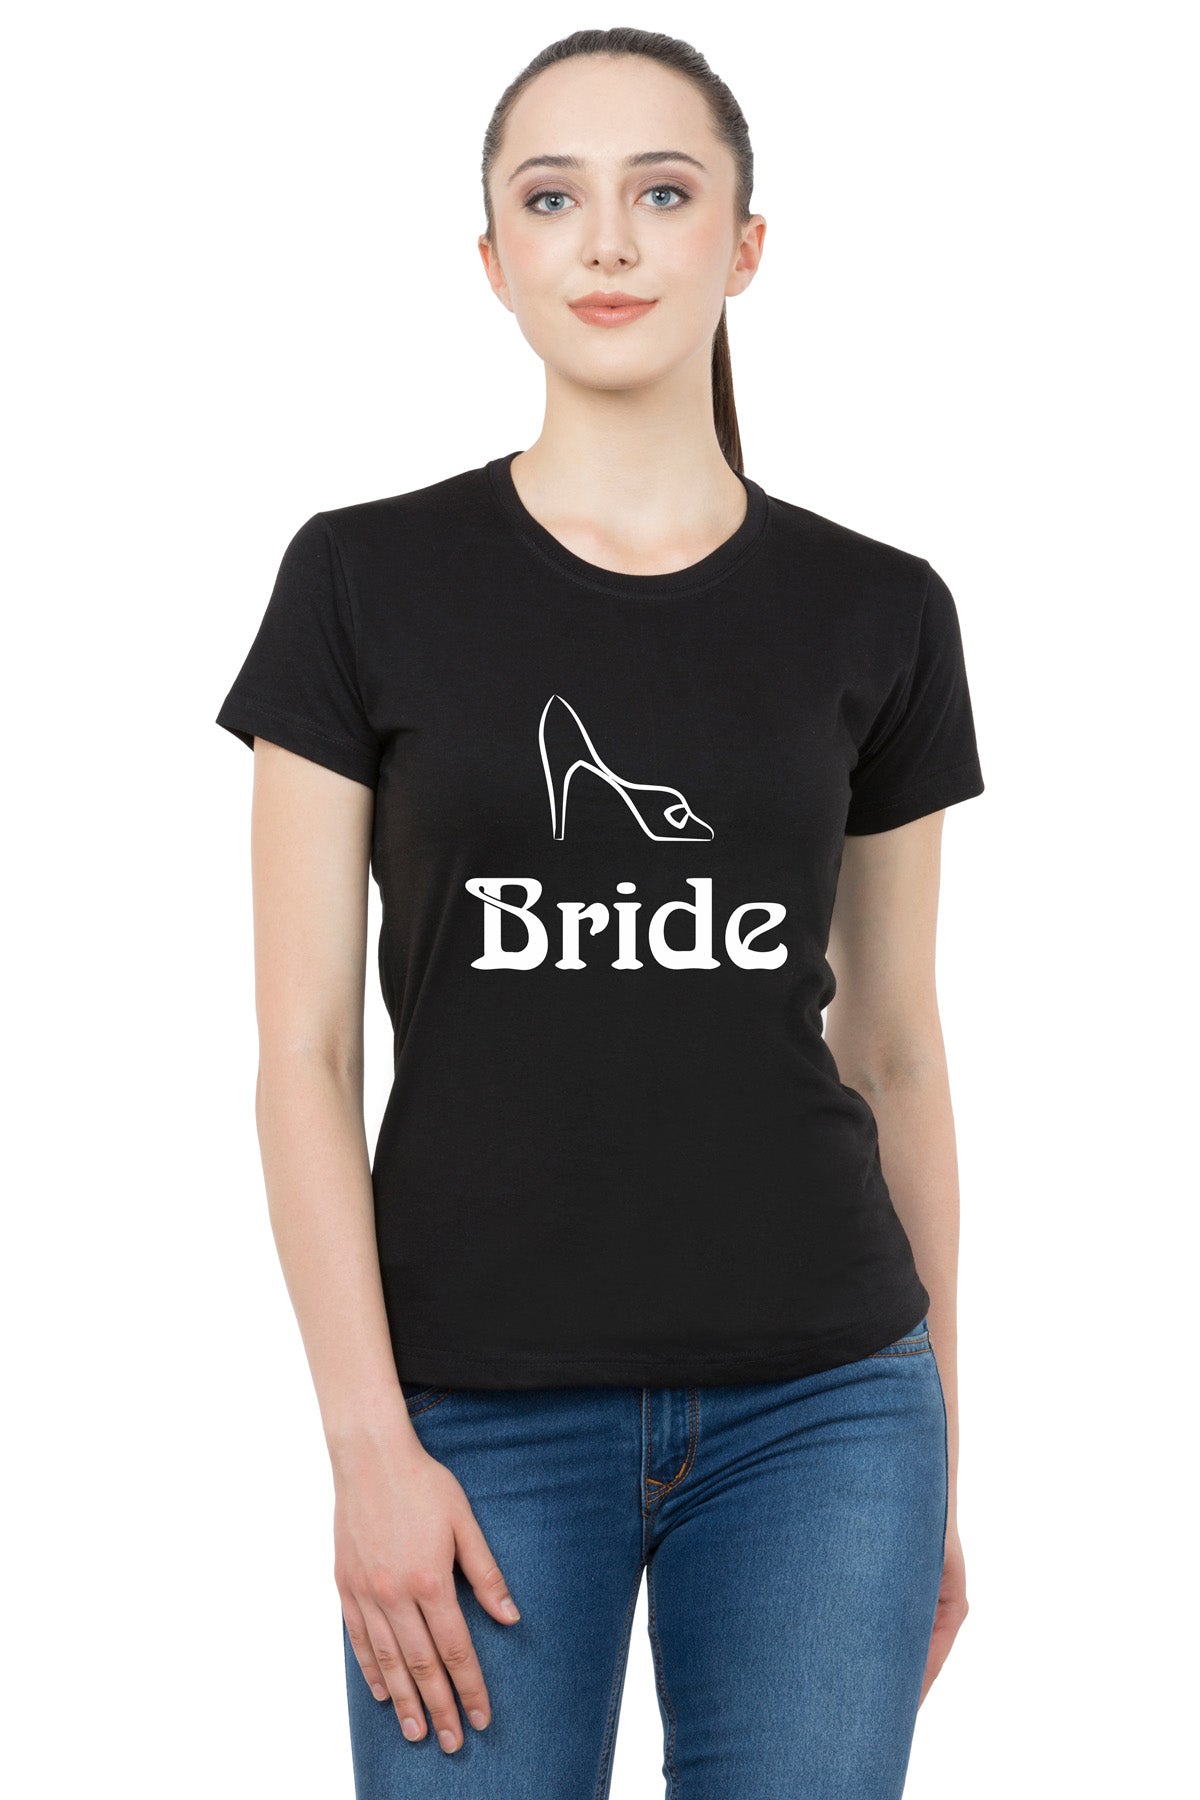 Bride Groom t shirt|wedding tshirts|Couple T shirts- Black 06